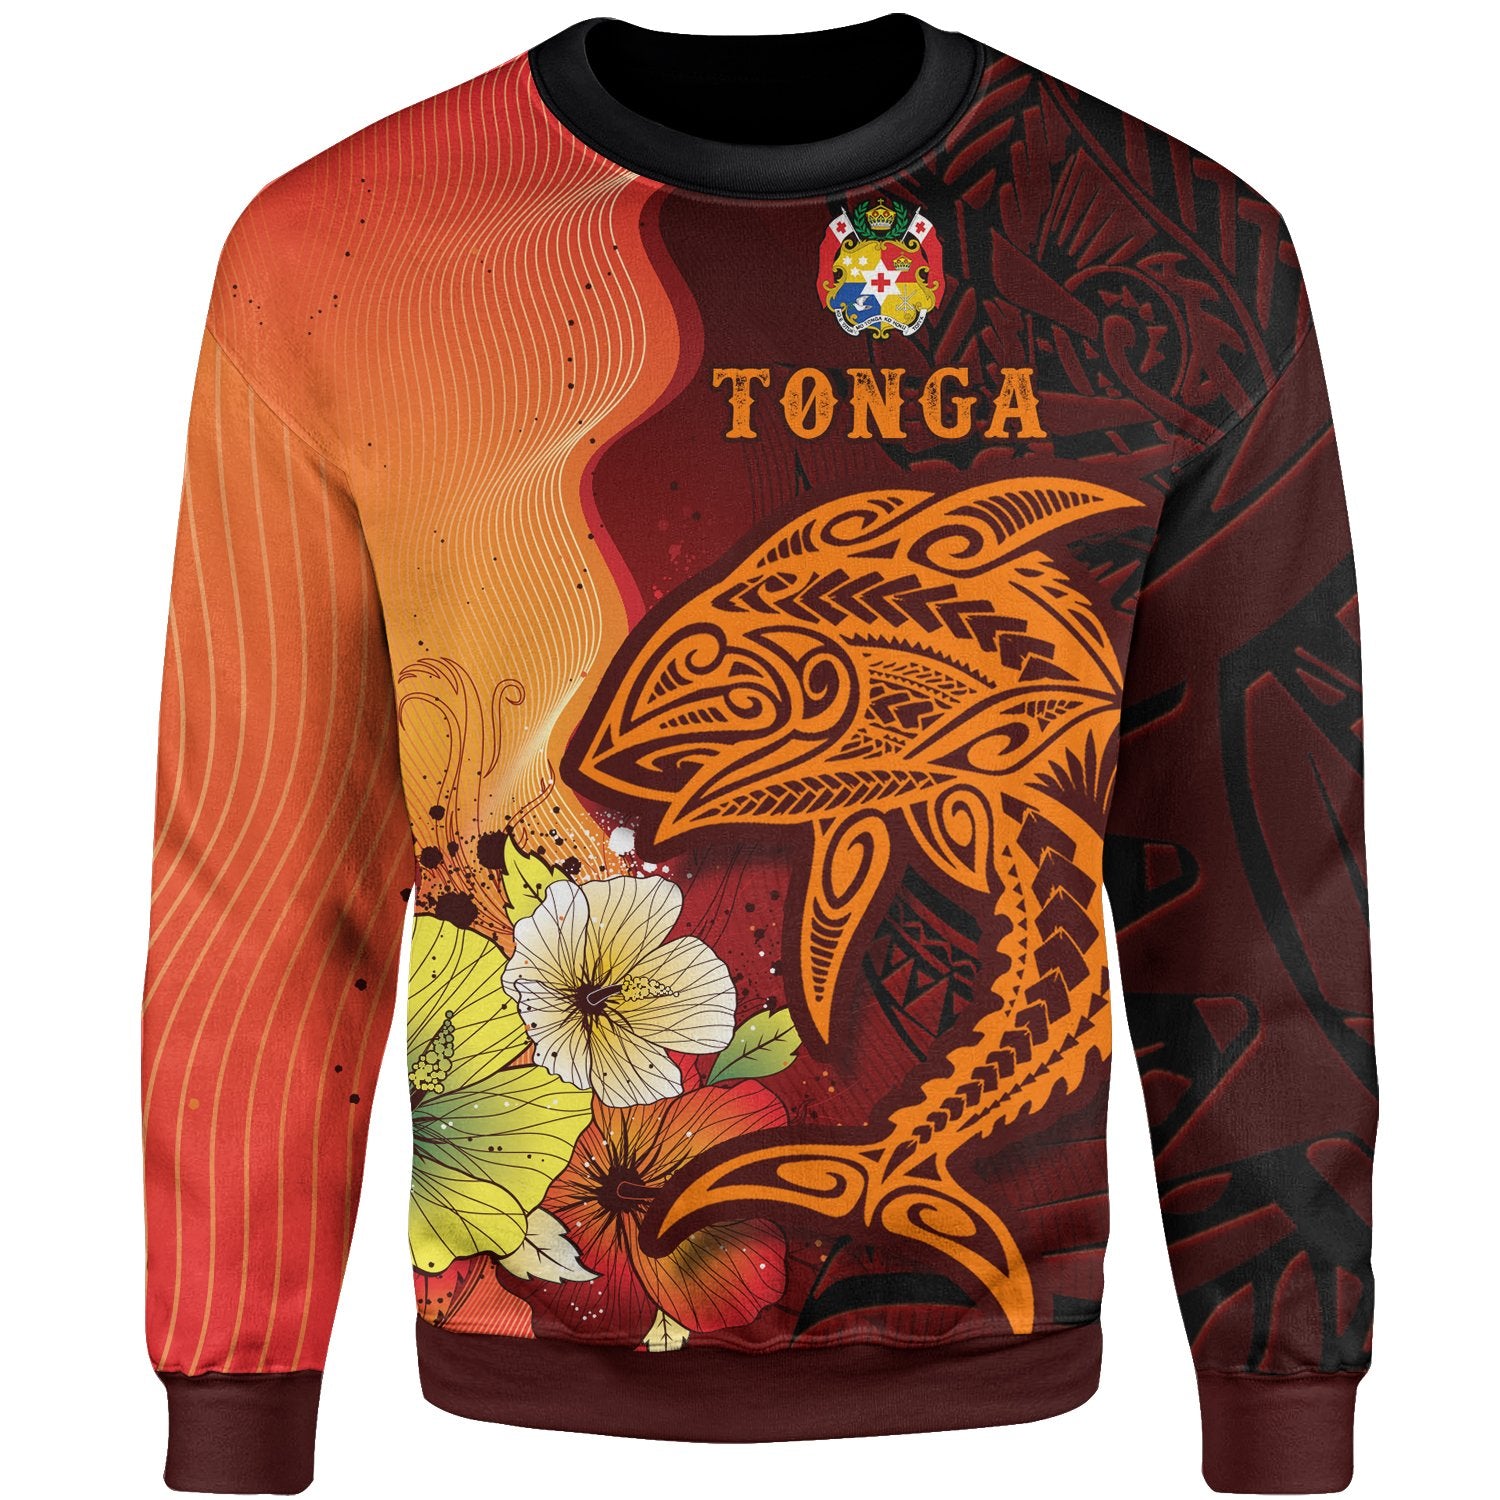 Tonga Sweater - Tribal Tuna Fish Unisex Orange - Polynesian Pride